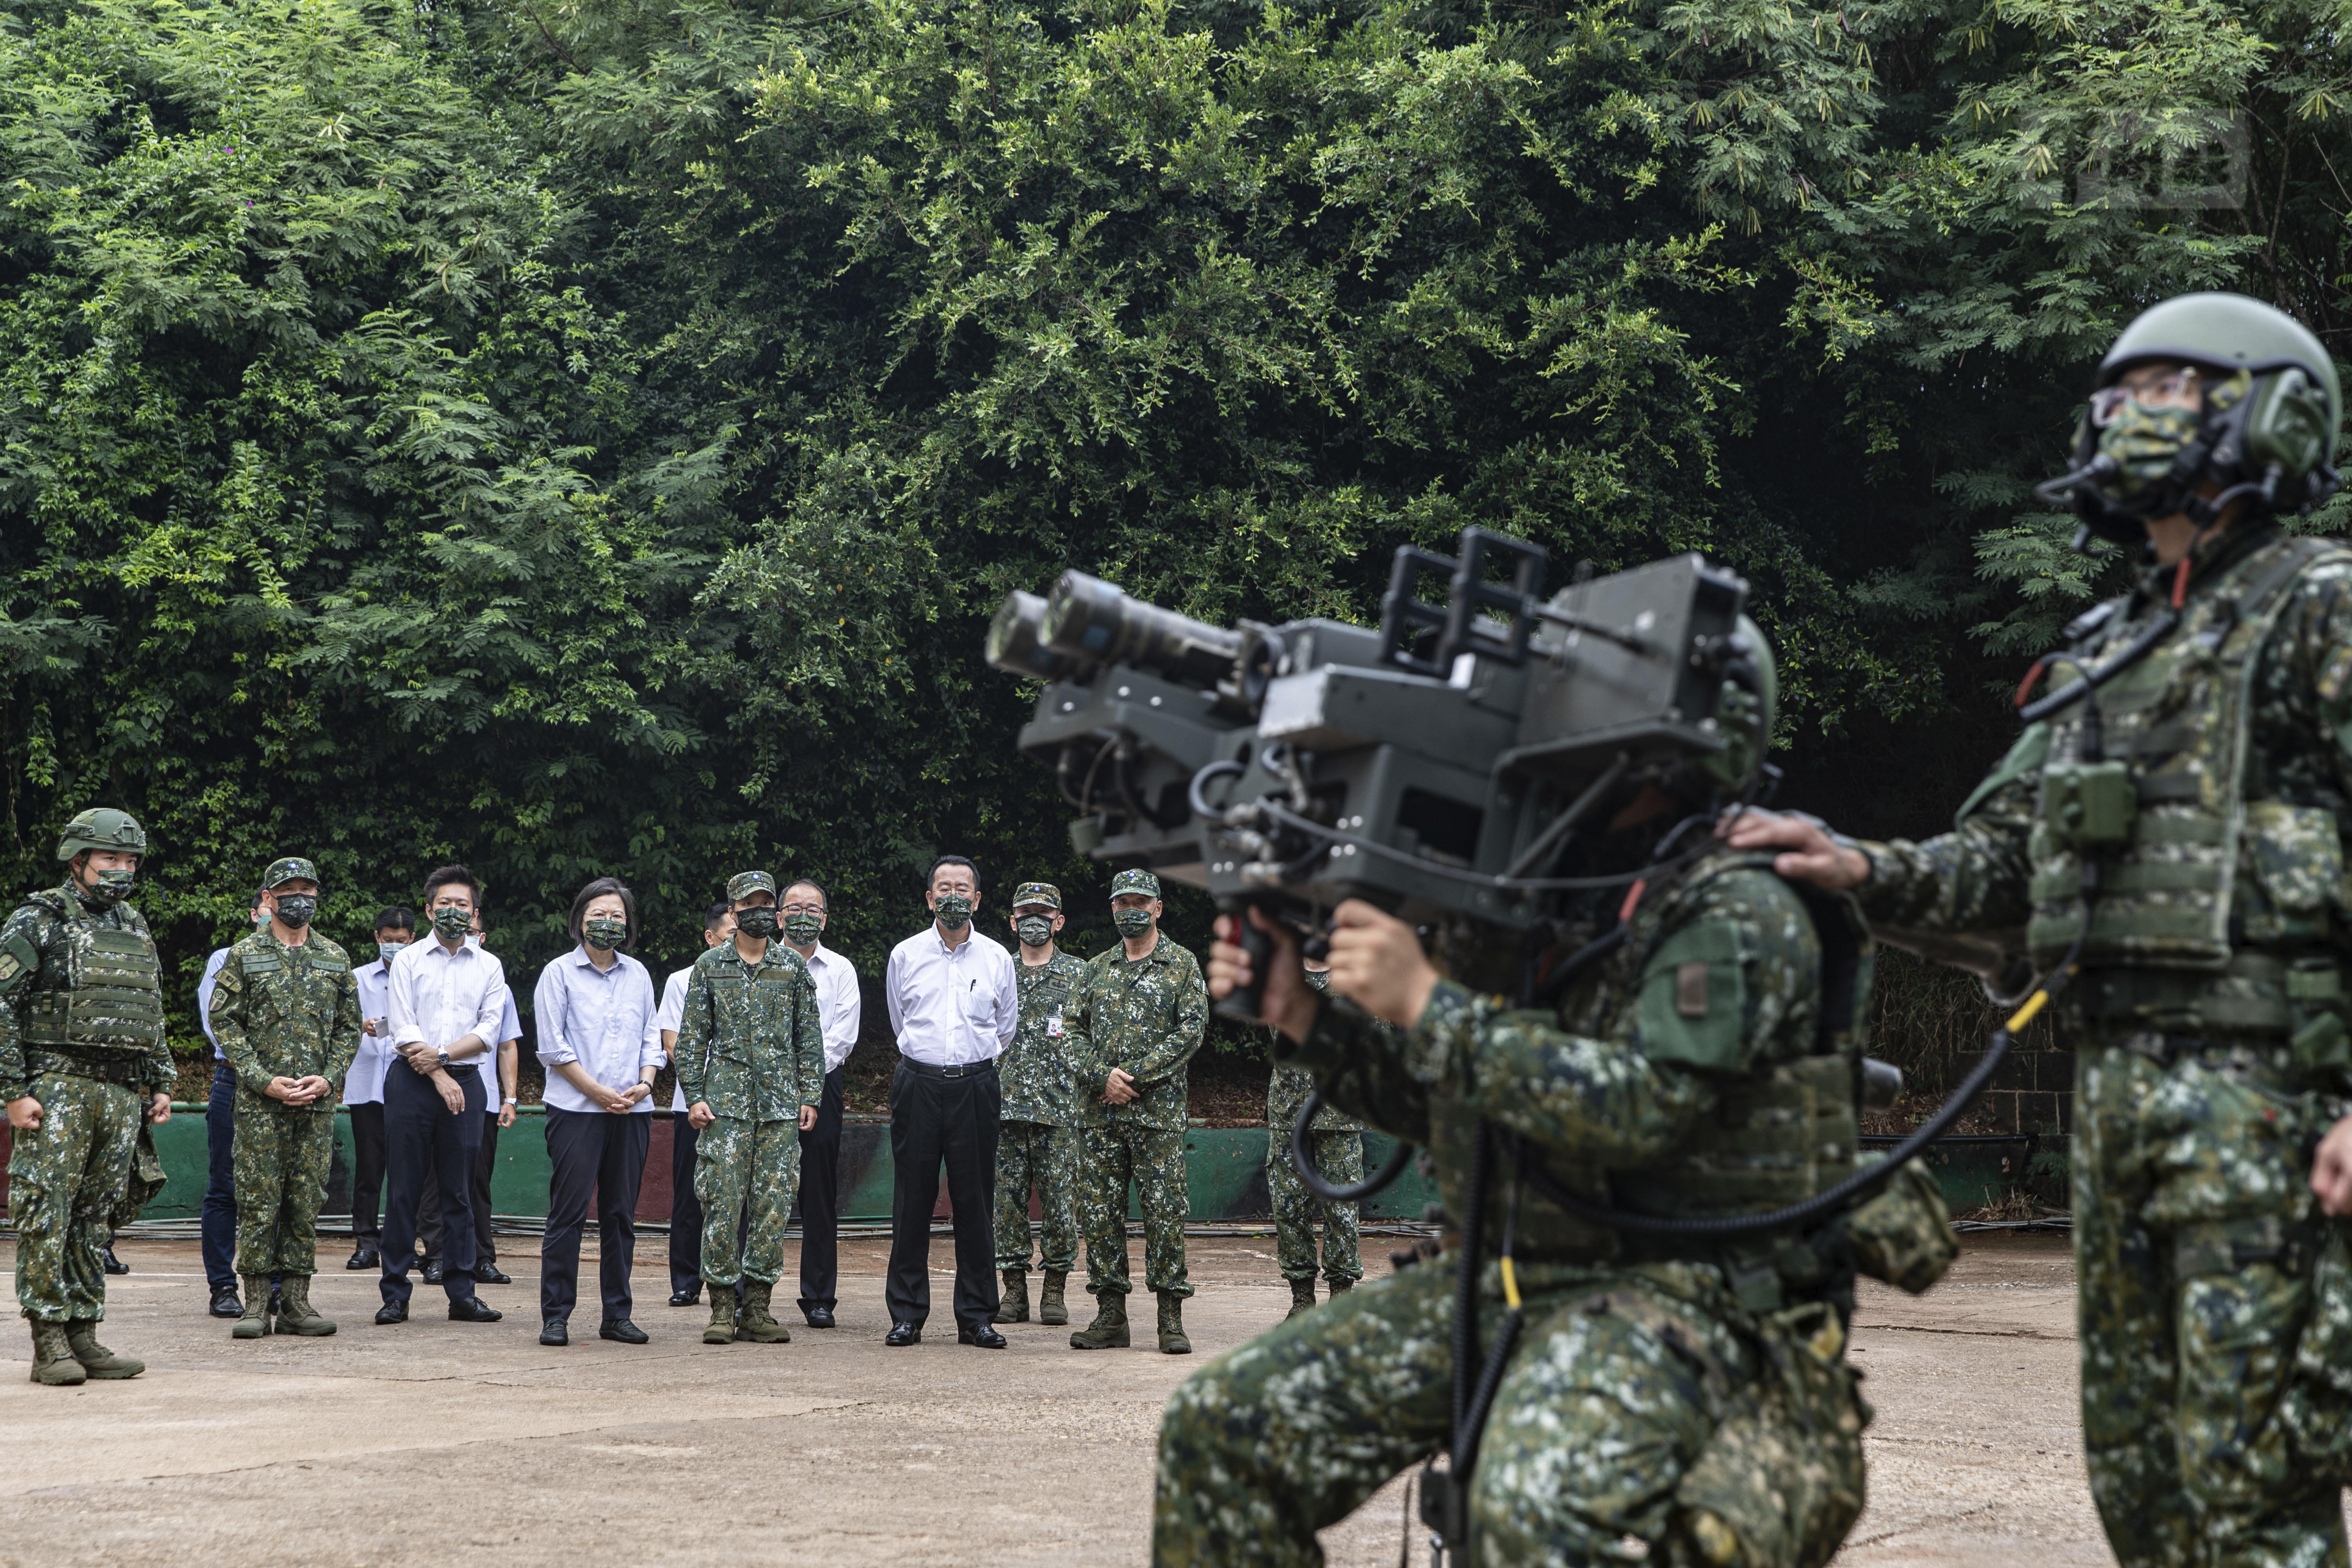 La presidenta de Taiwán, Tsai Ing-wen, observa a los soldados operar equipos durante una visita a una estación naval en Penghu, un archipiélago de varias docenas de islas frente a la costa occidental de Taiwán. (Ministerio de Defensa Nacional de Taiwán vía AP)